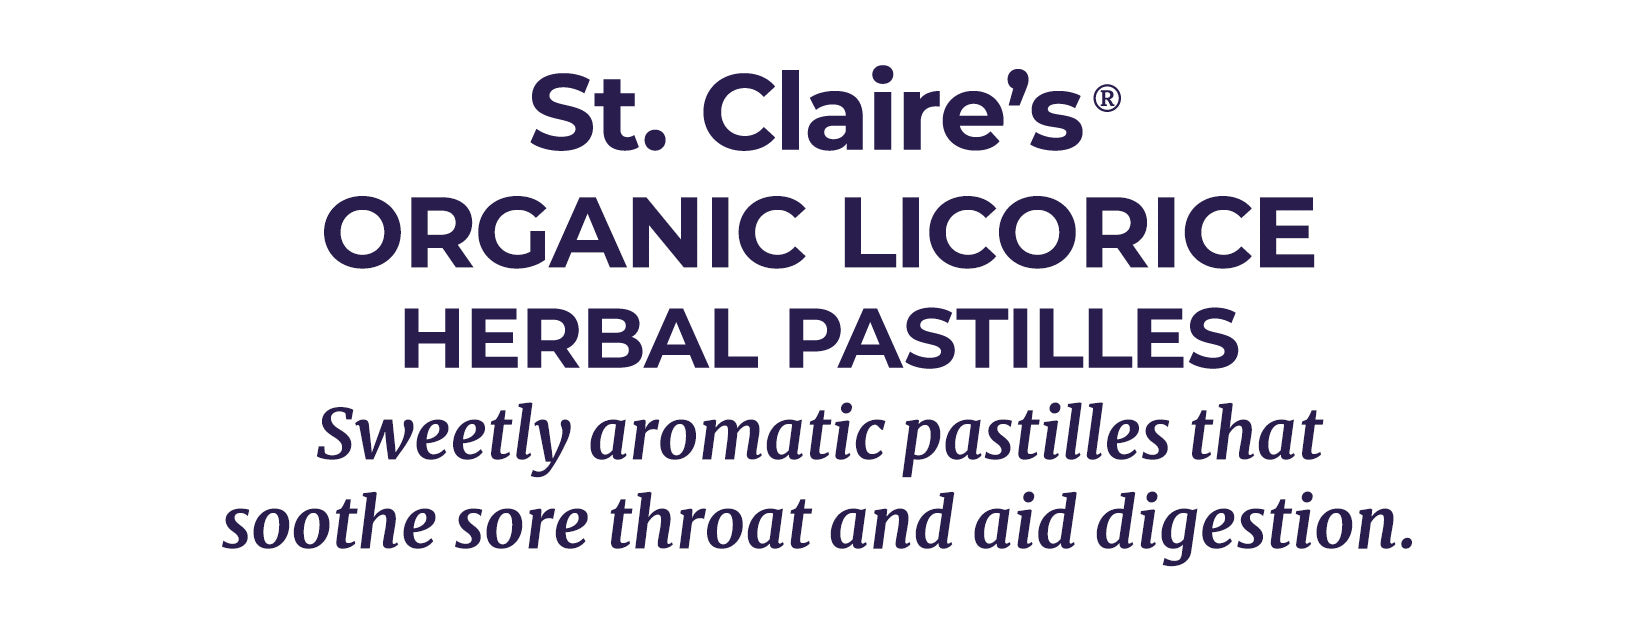 Organic Licorice Herbal Pastilles